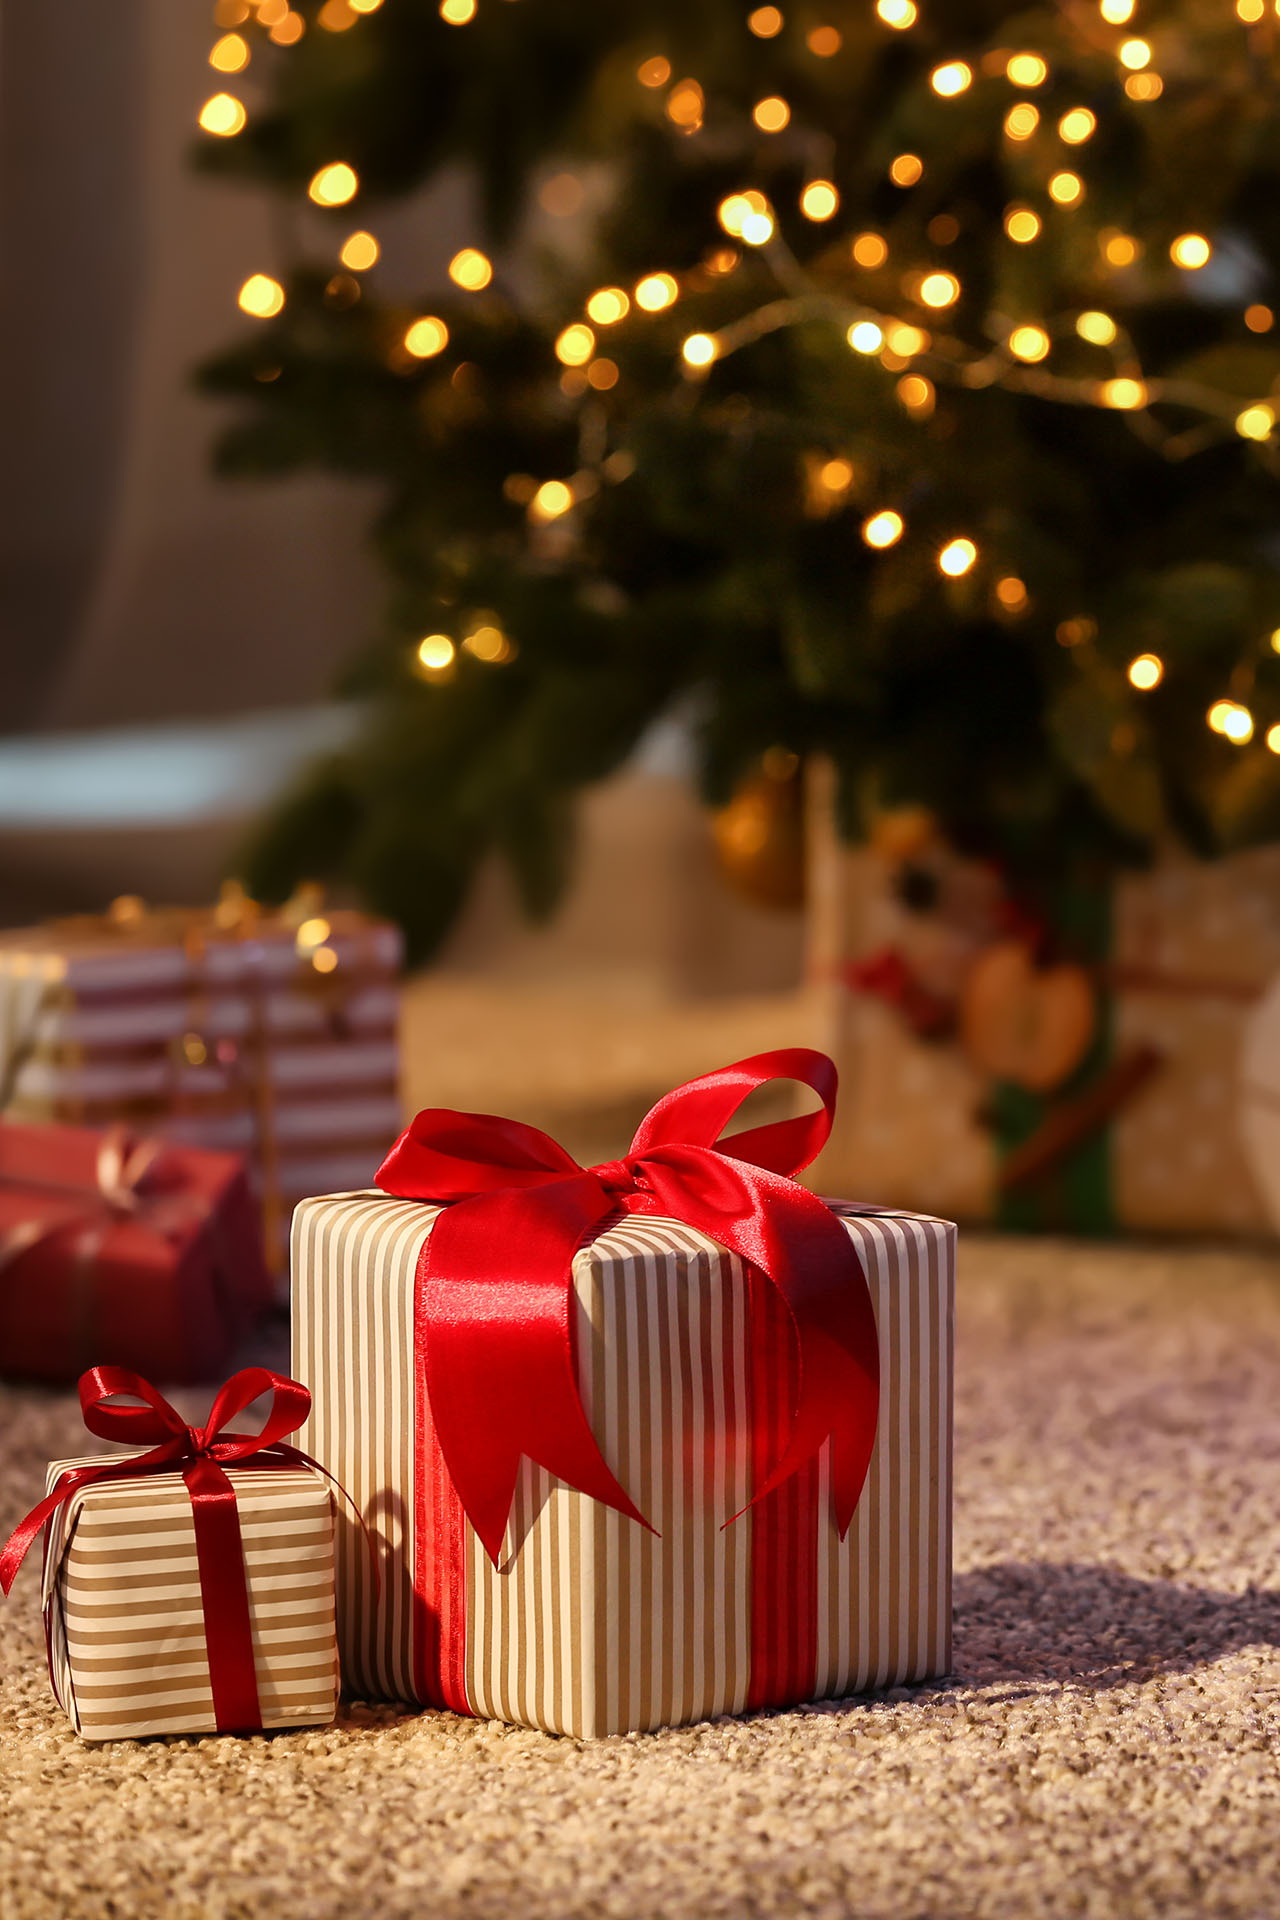 Geschenke auf dem Teppich vor einem Weihnachtsbaum mit Lichterkette